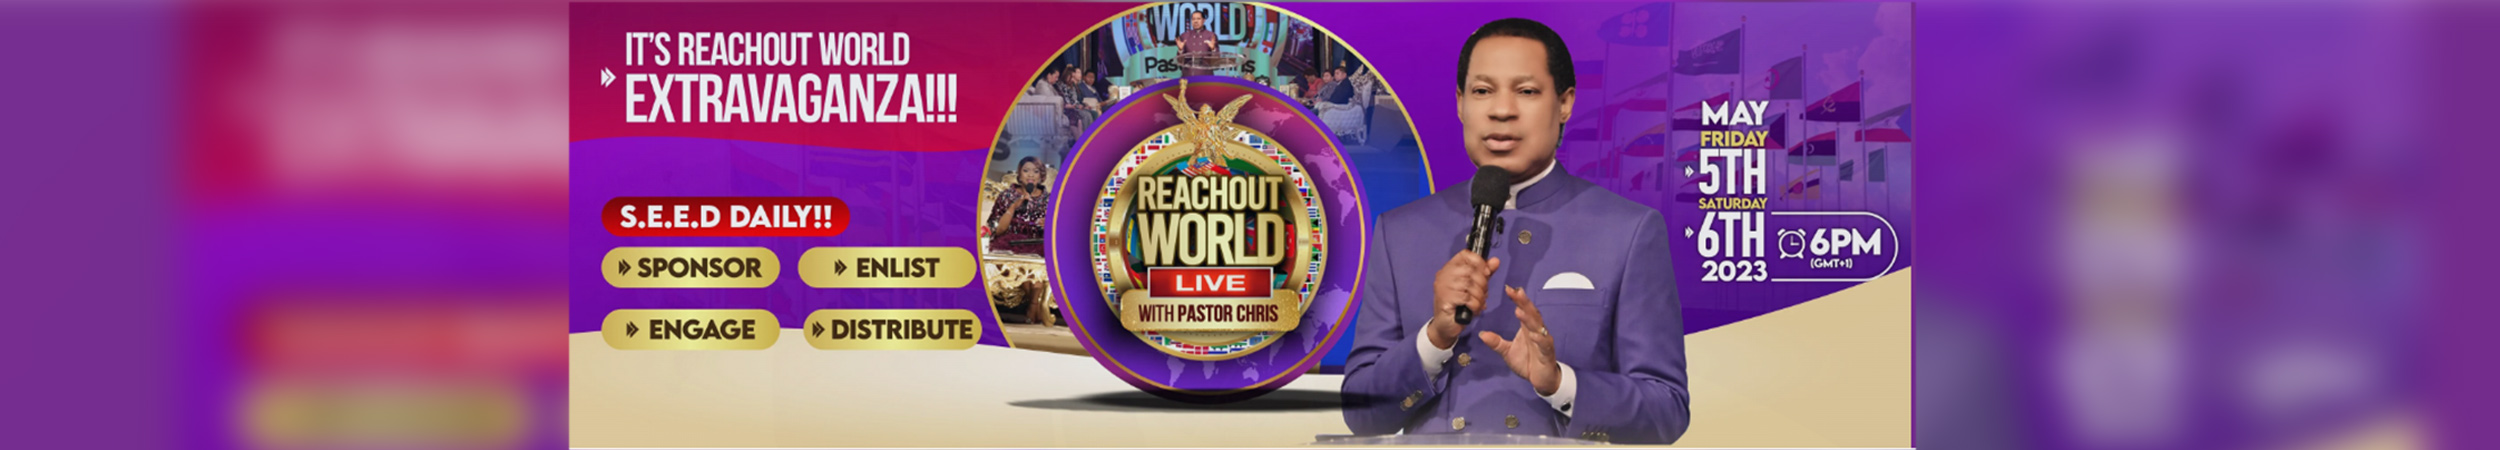 Reachout World Live Extravaganza